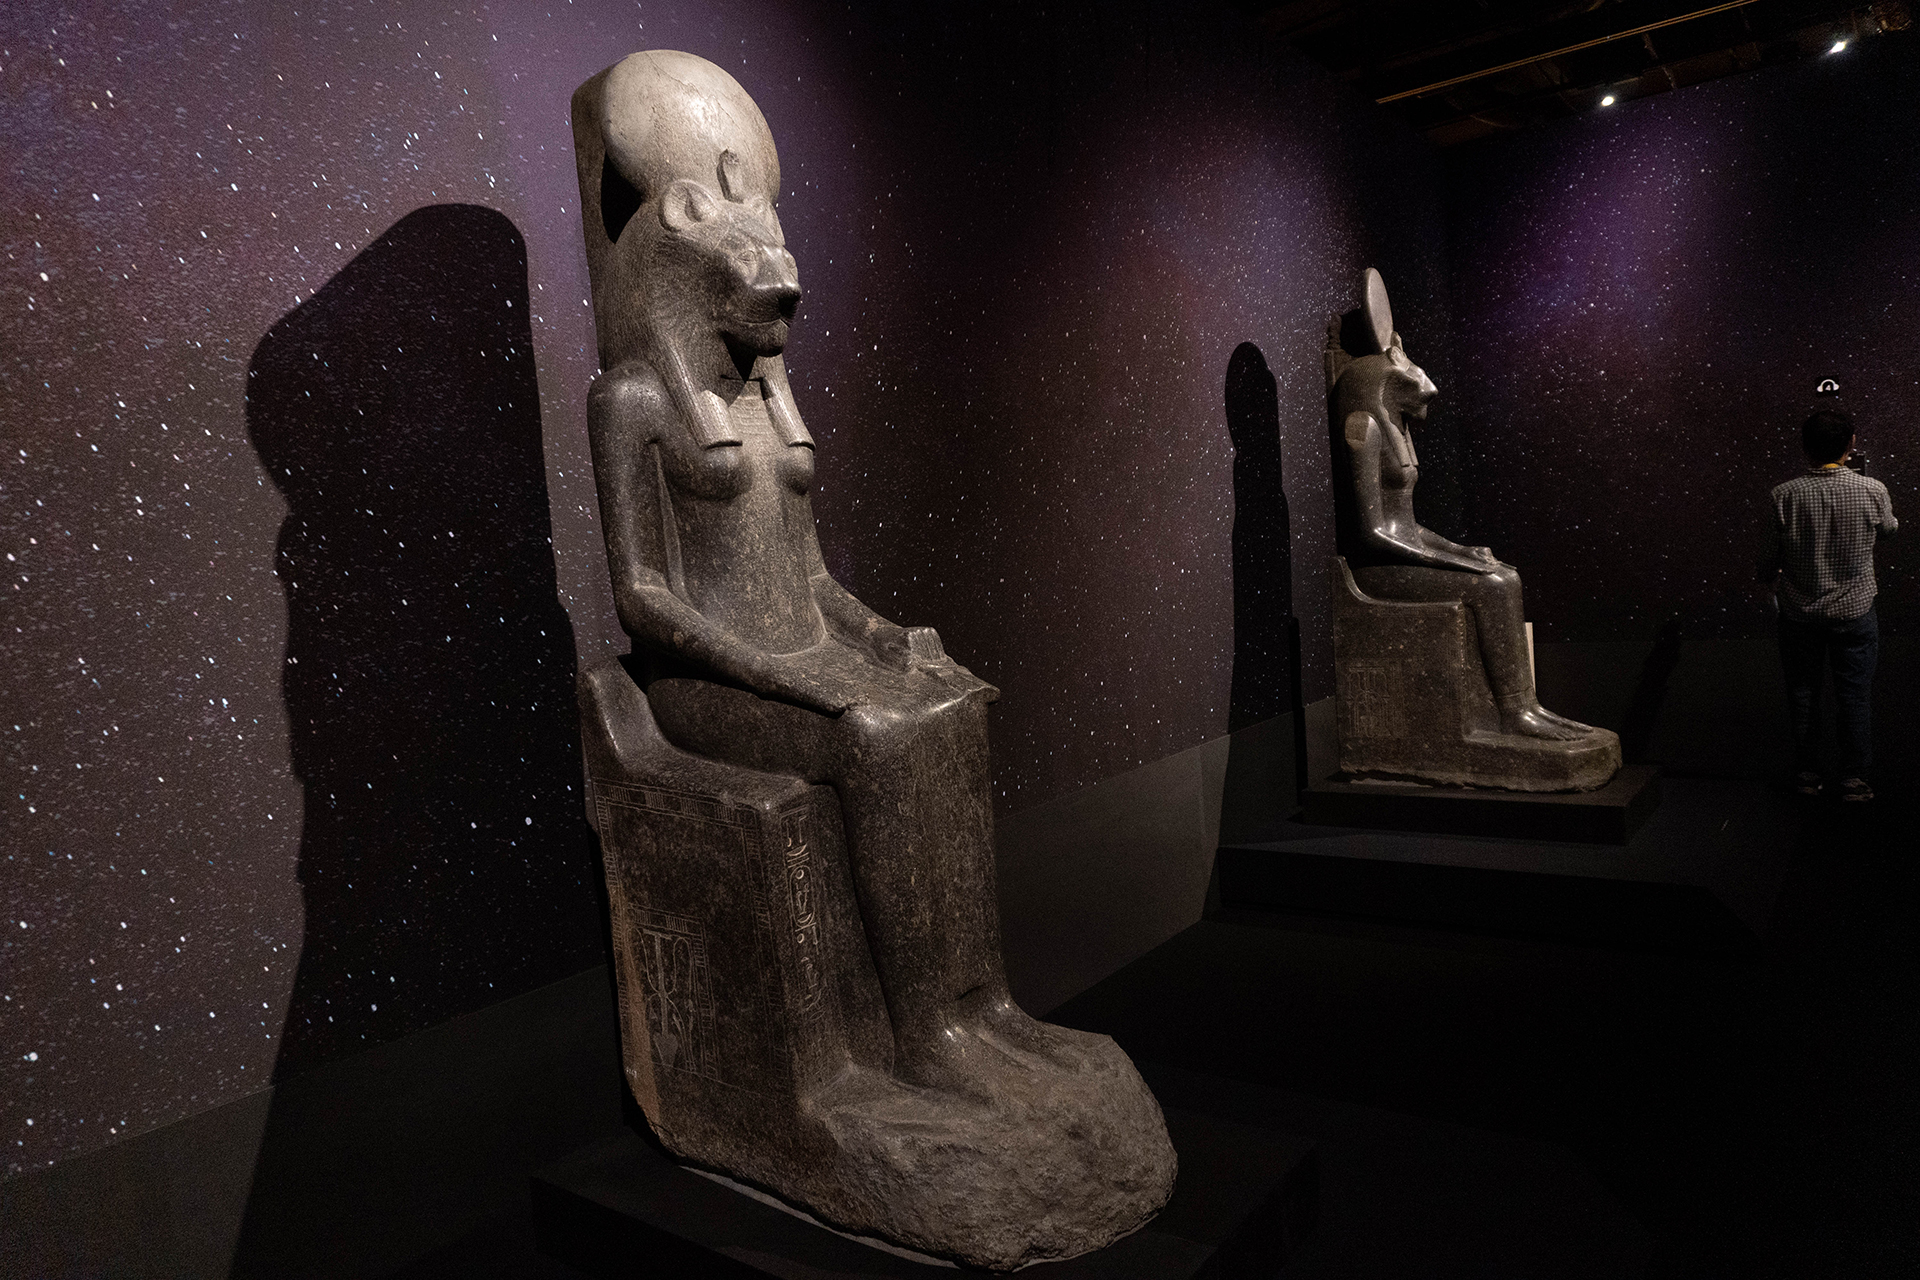 古代エジプト展・天地創造の神話・江戸東京博物館